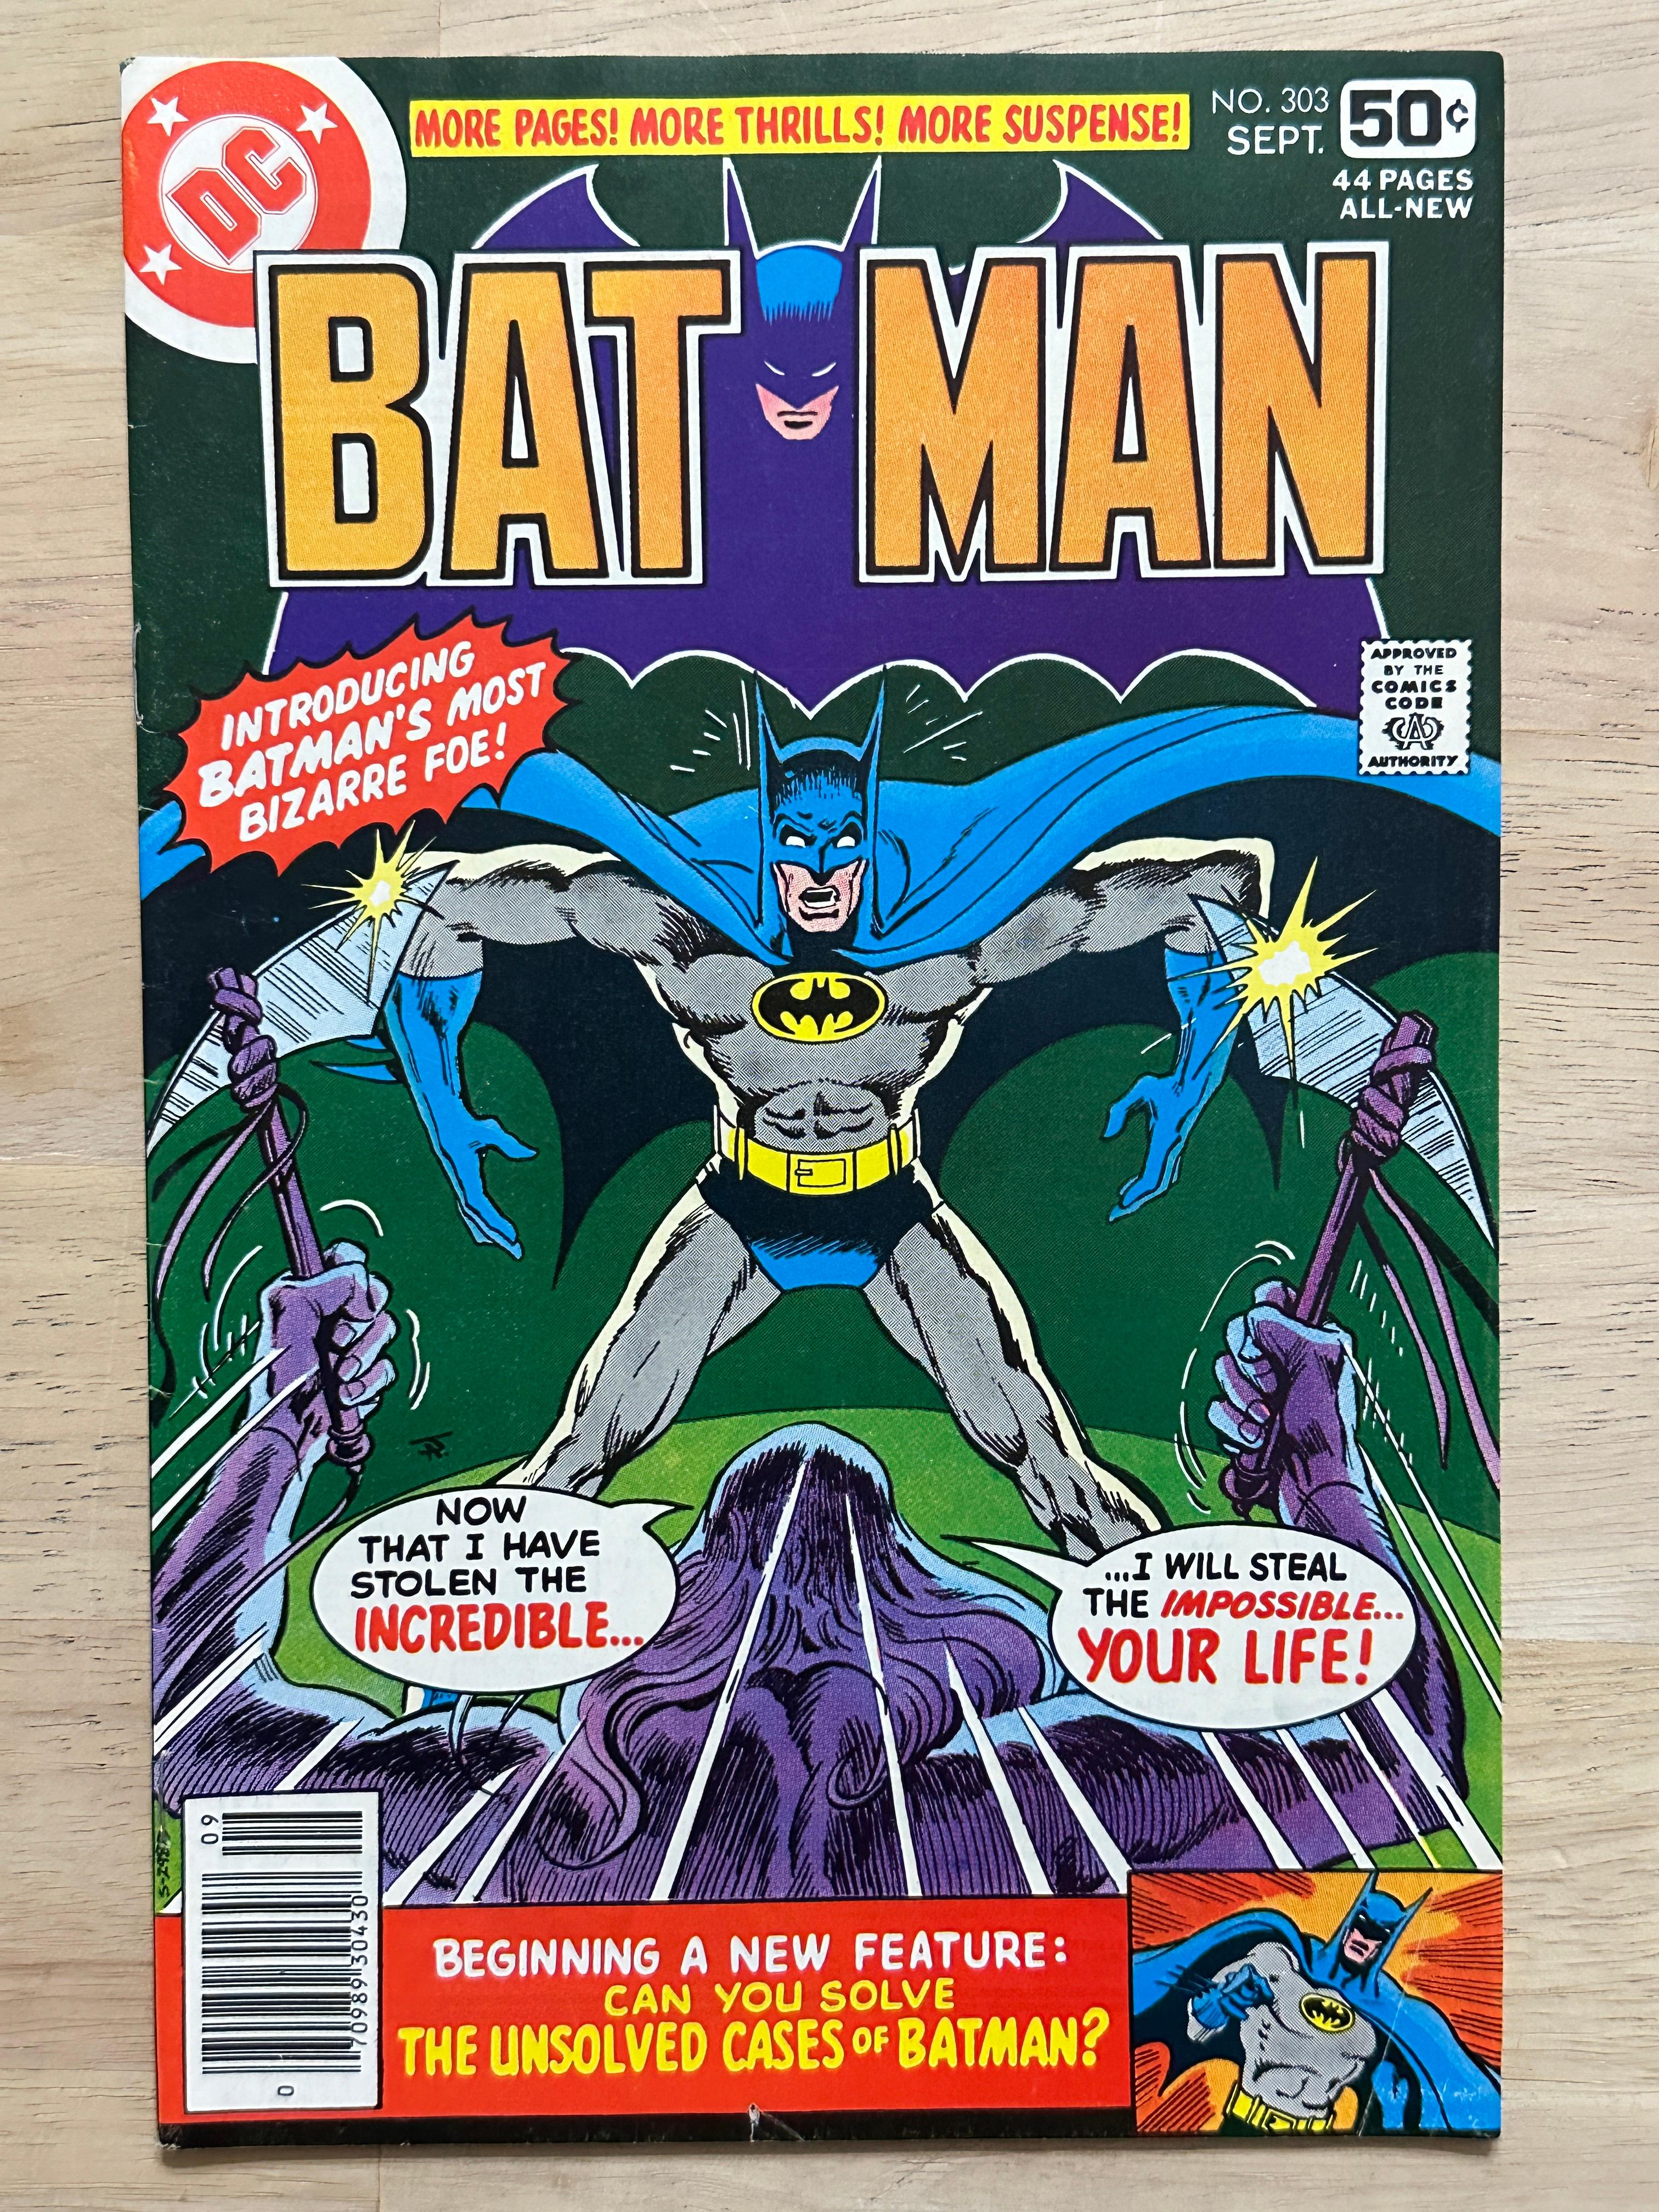 (6) Vintage DC Batman Comics